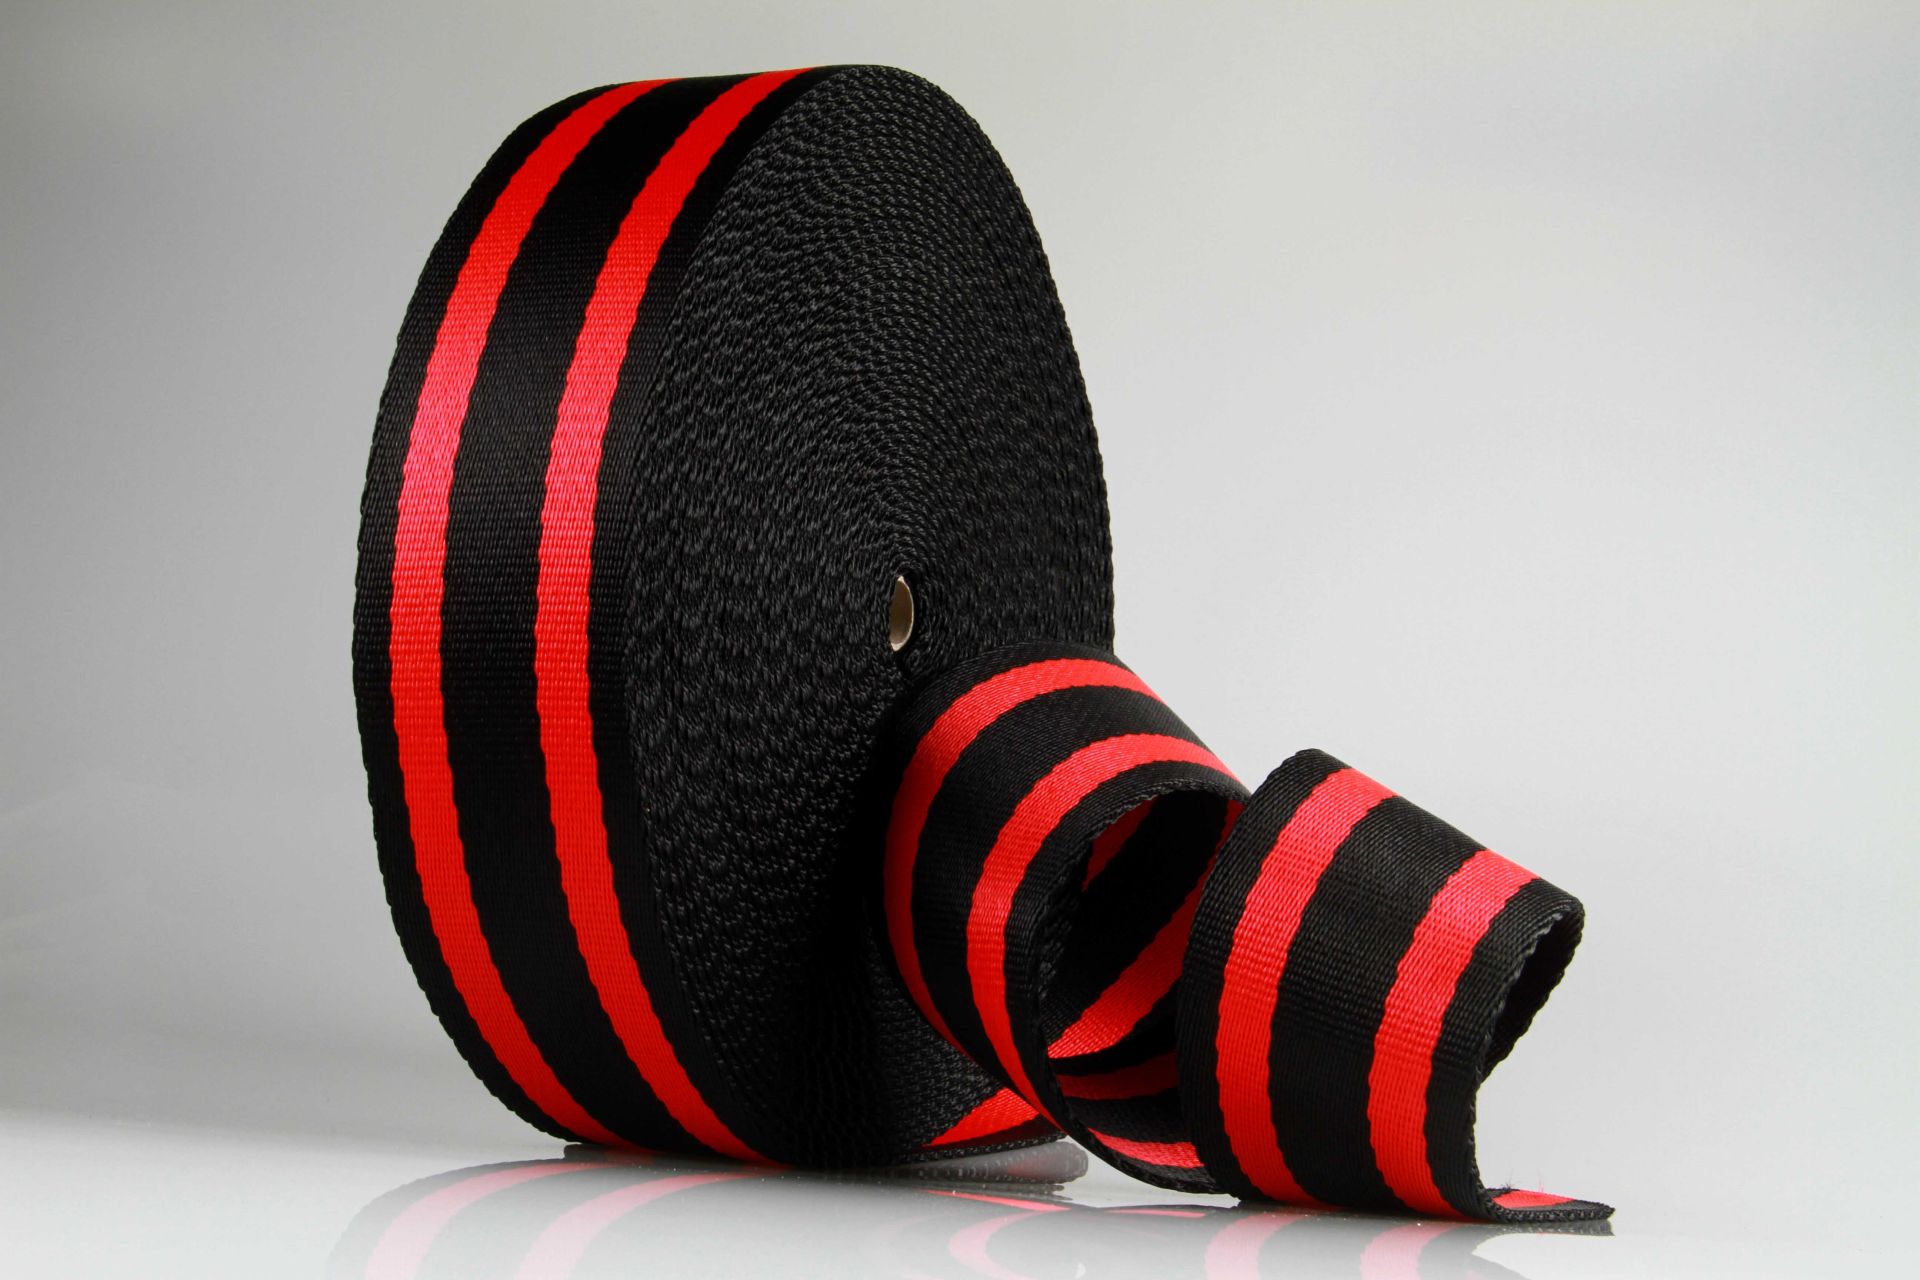 Dicke Gurtware aus PP  -  85 mm Breite  -  25 m Rollenware  -  Hochfest und SEHR Robust  -  Schwarz mit roten Streifen